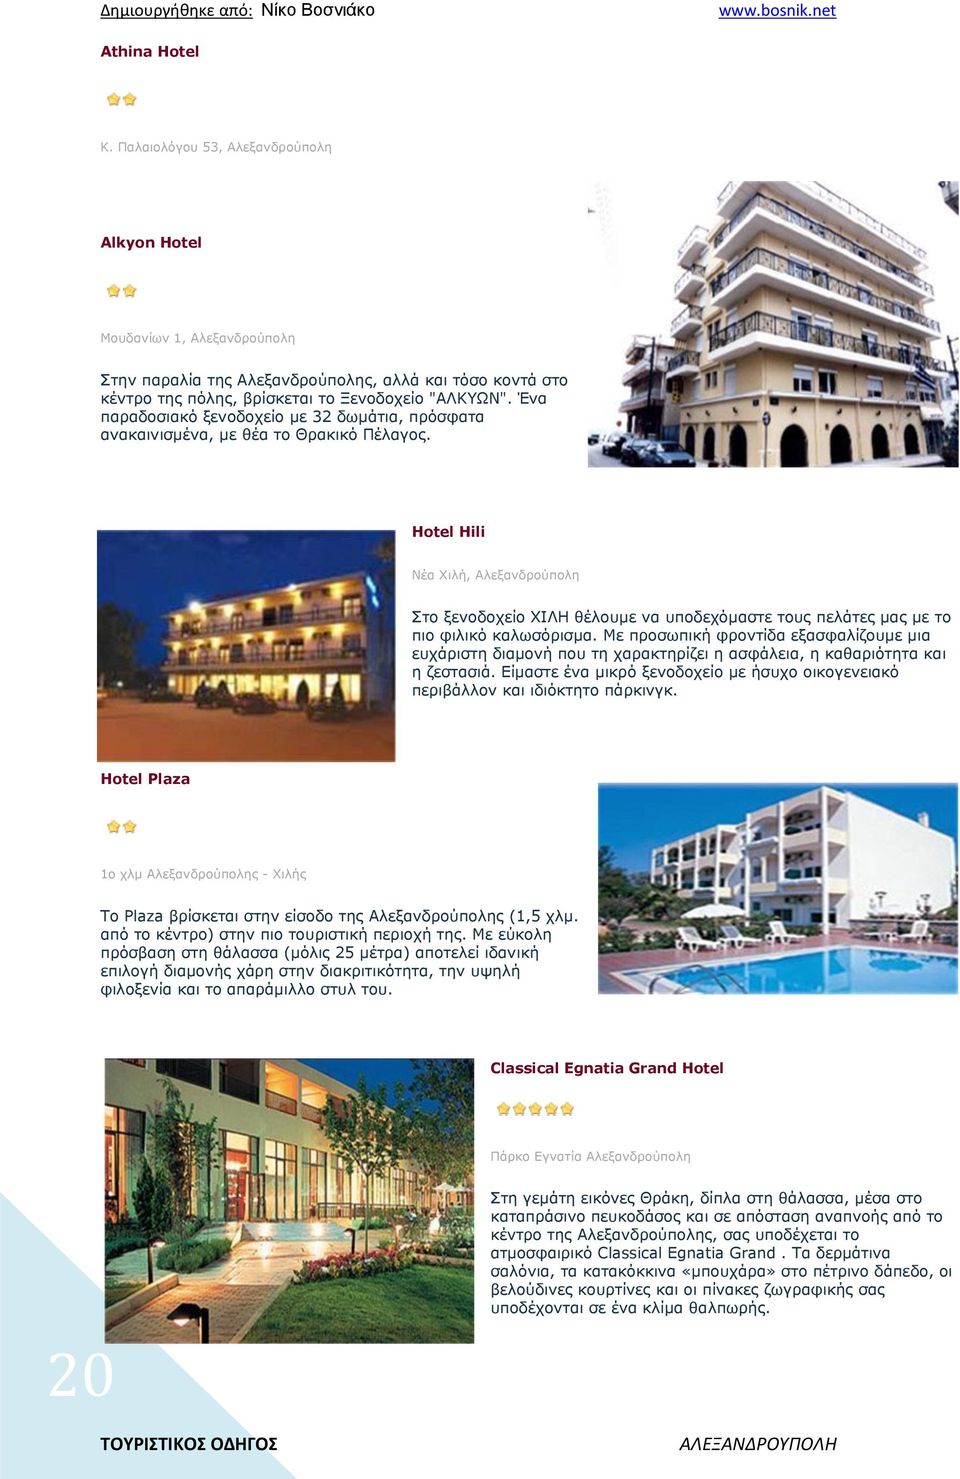 Ένα παραδοσιακό ξενοδοχείο με 32 δωμάτια, πρόσφατα ανακαινισμένα, με θέα το Θρακικό Πέλαγος.